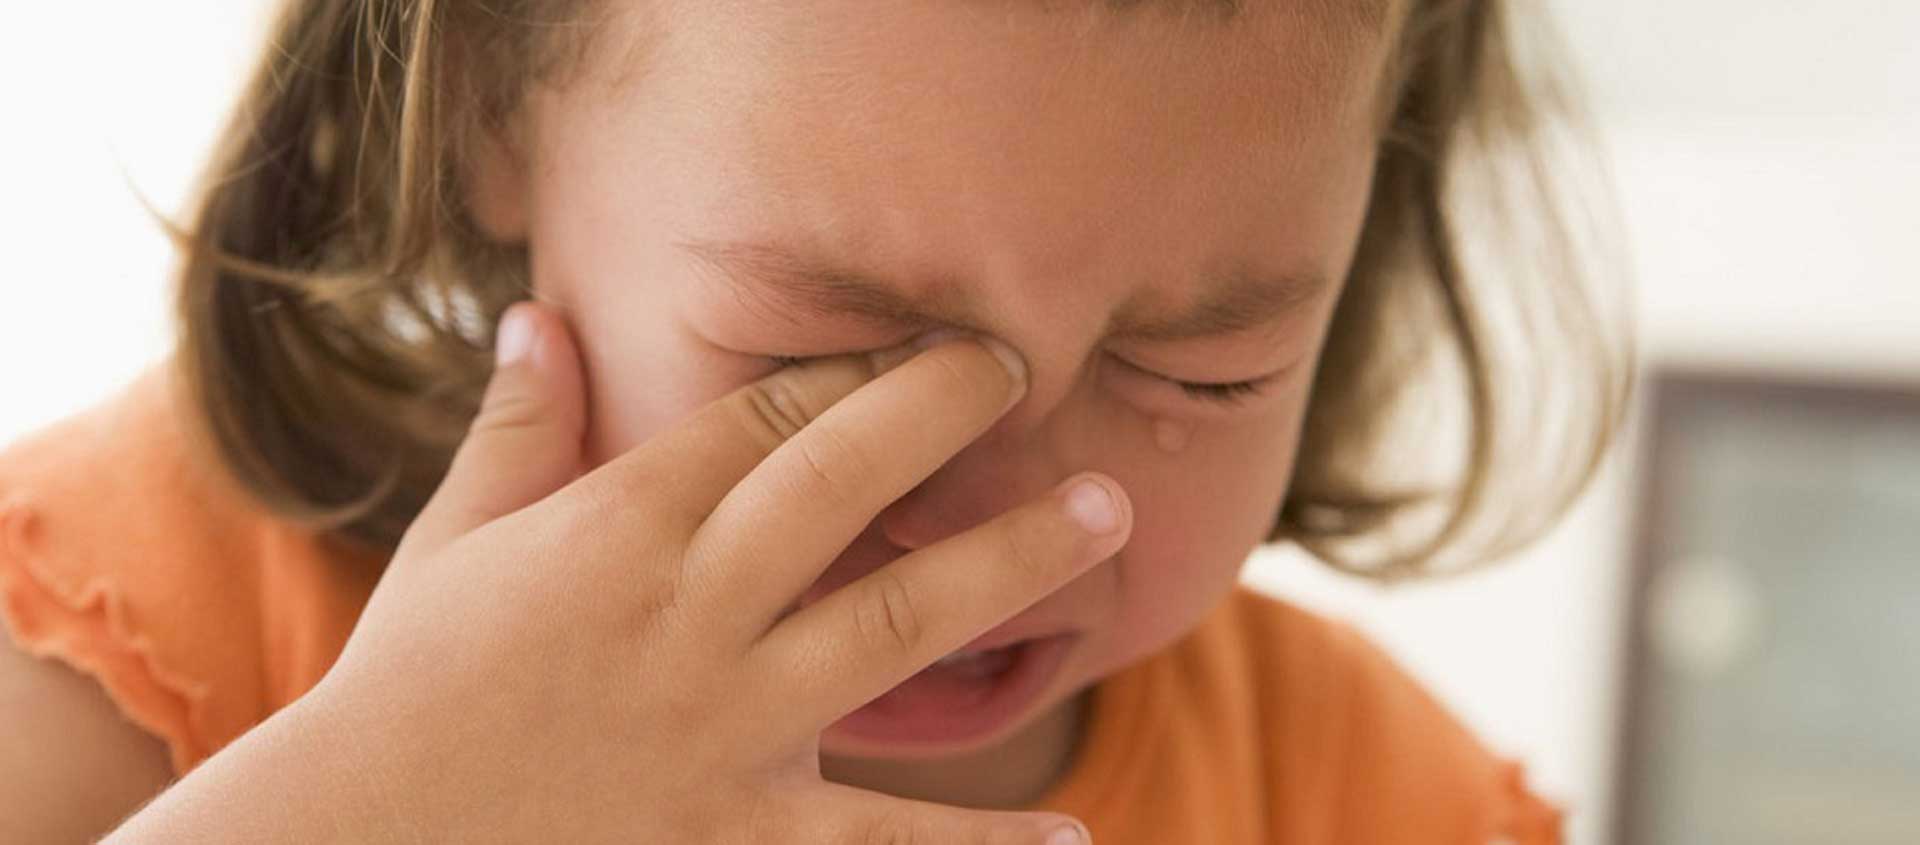 A preschool-age girl crying